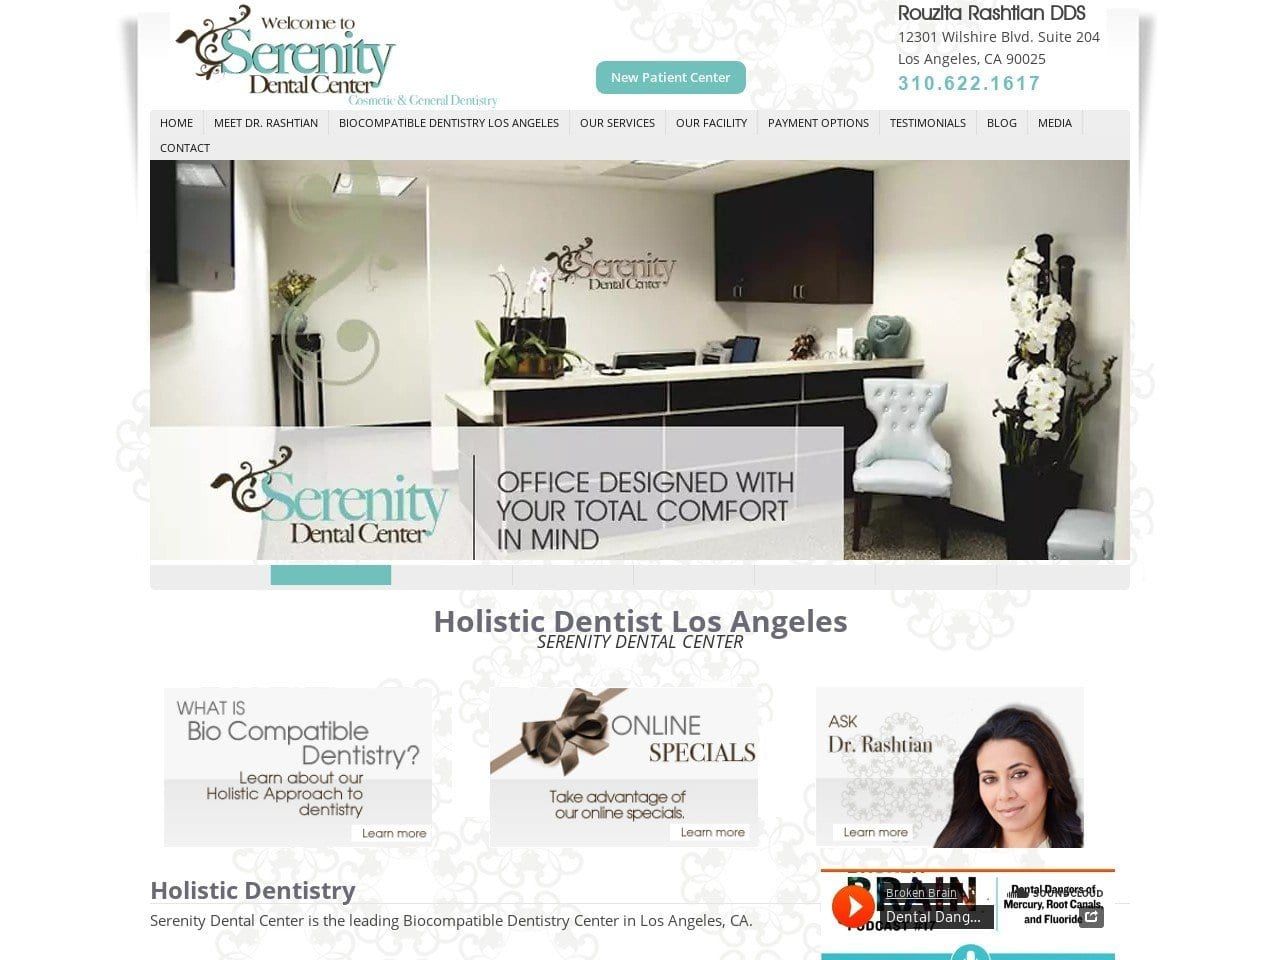 Serenity Dental Center Website Screenshot from serenitydentalcenter.com